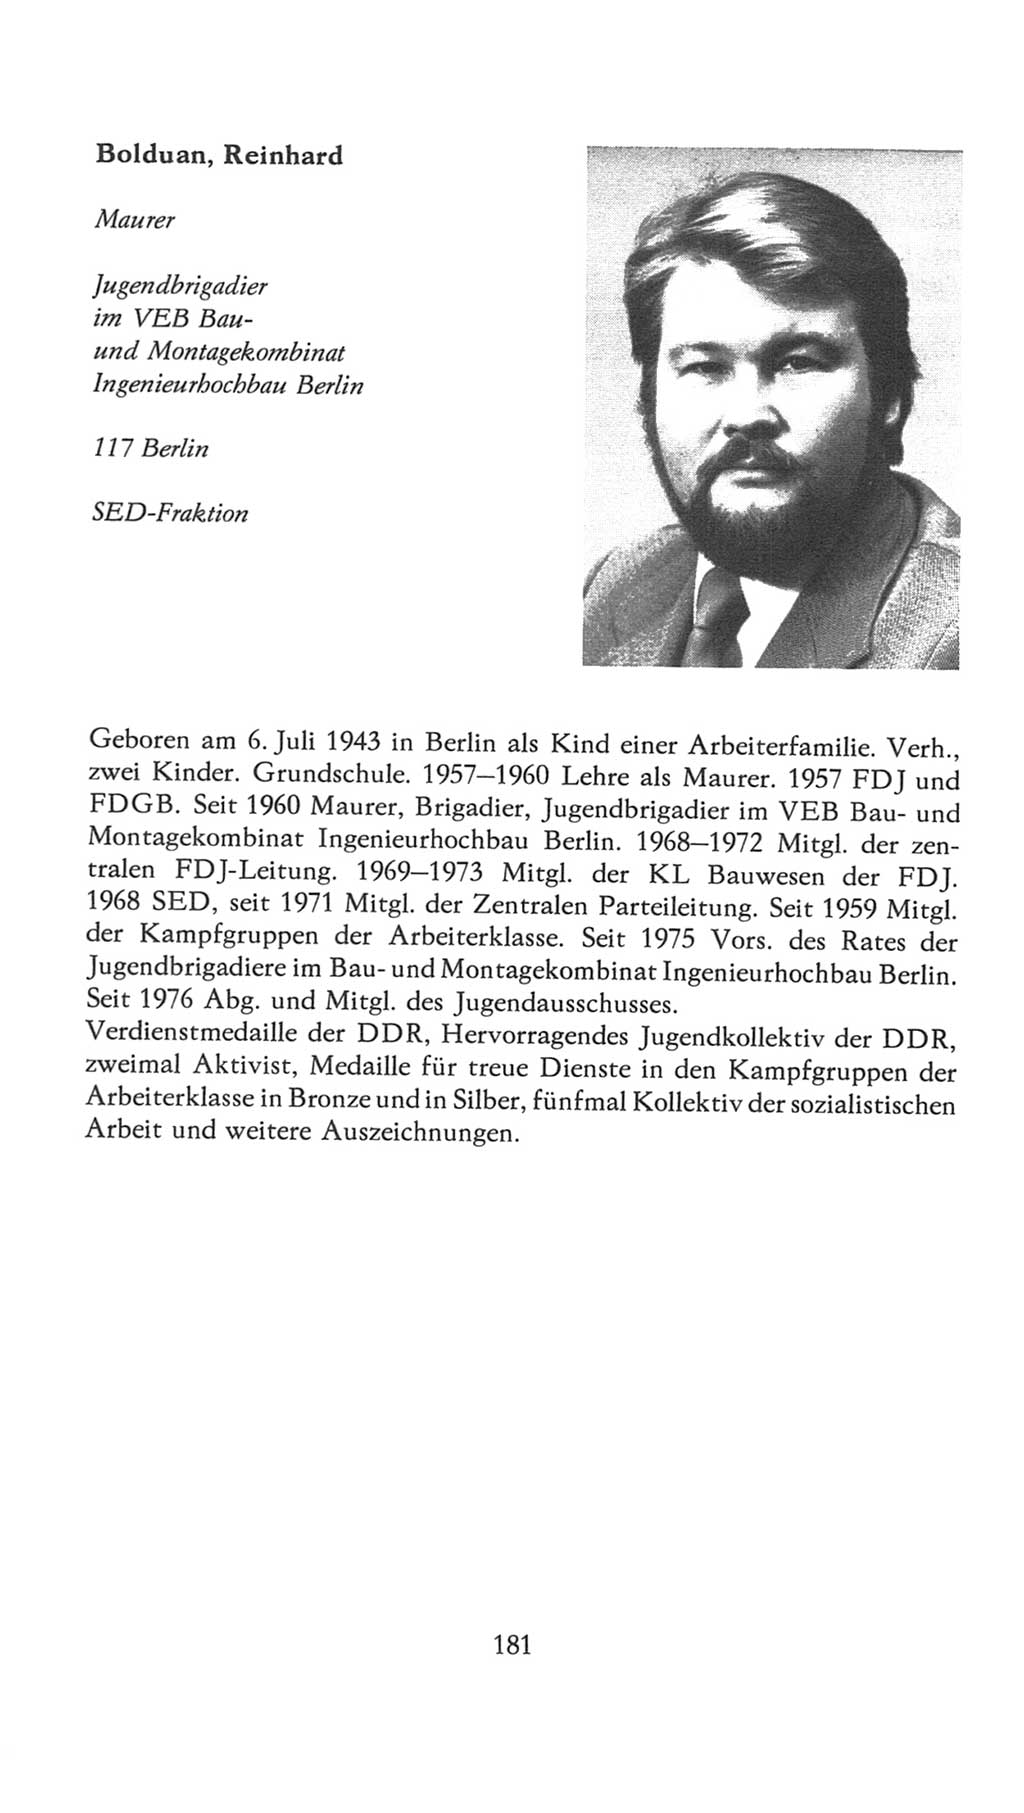 Volkskammer (VK) der Deutschen Demokratischen Republik (DDR), 7. Wahlperiode 1976-1981, Seite 181 (VK. DDR 7. WP. 1976-1981, S. 181)